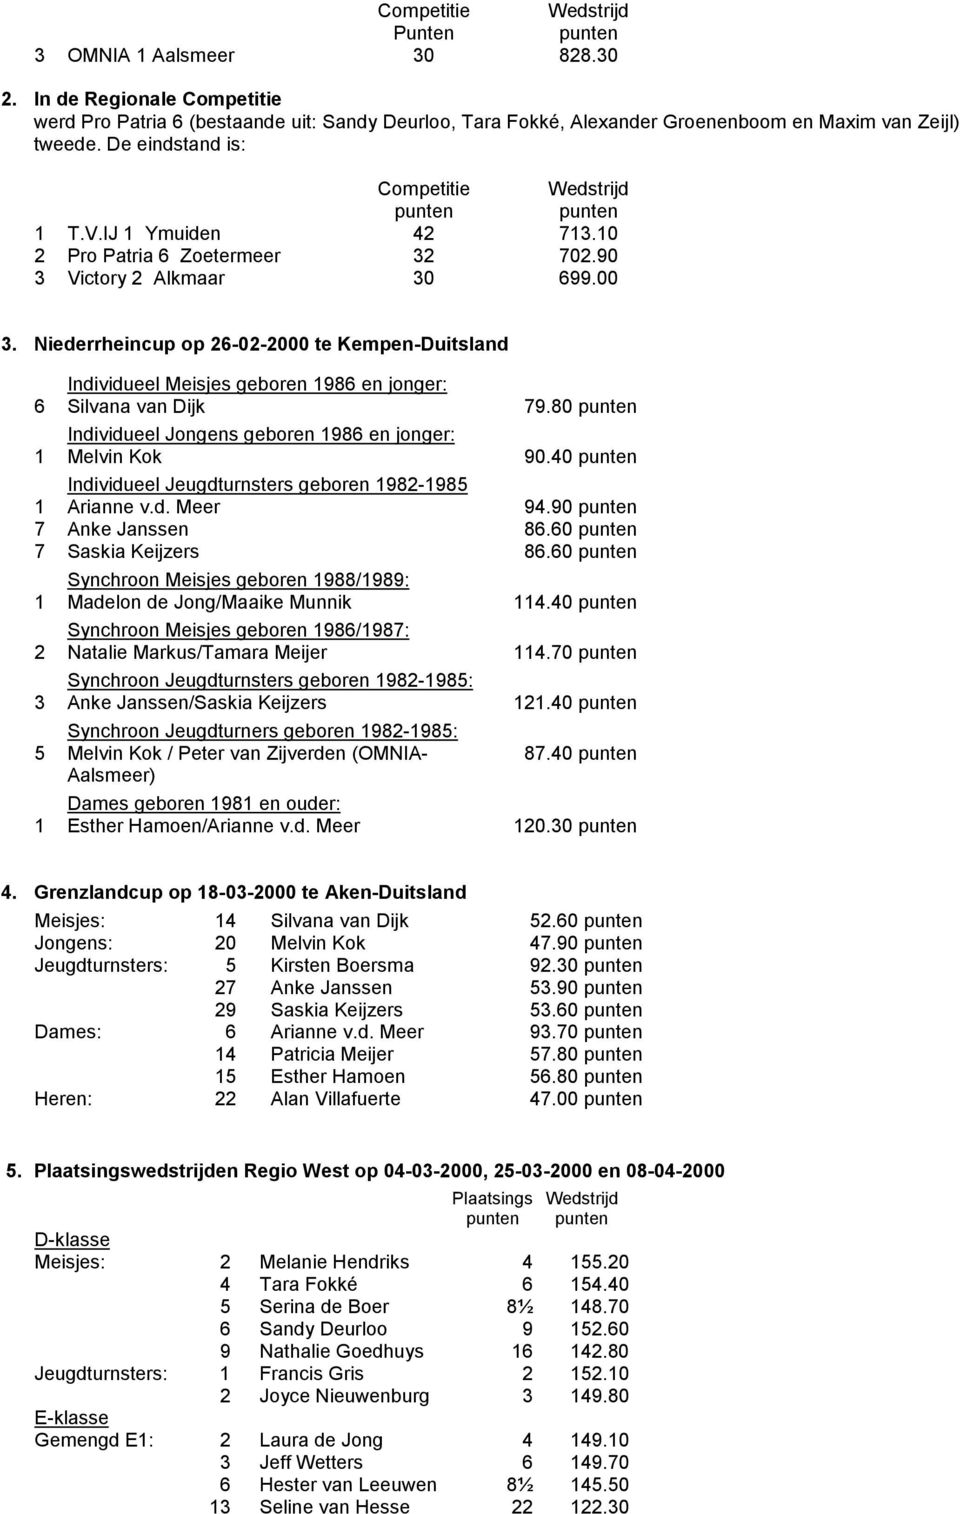 Niederrheincup op 26-02-2000 te Kempen-Duitsland Individueel Meisjes geboren 1986 en jonger: 6 Silvana van Dijk 79.80 Individueel Jongens geboren 1986 en jonger: 1 Melvin Kok 90.